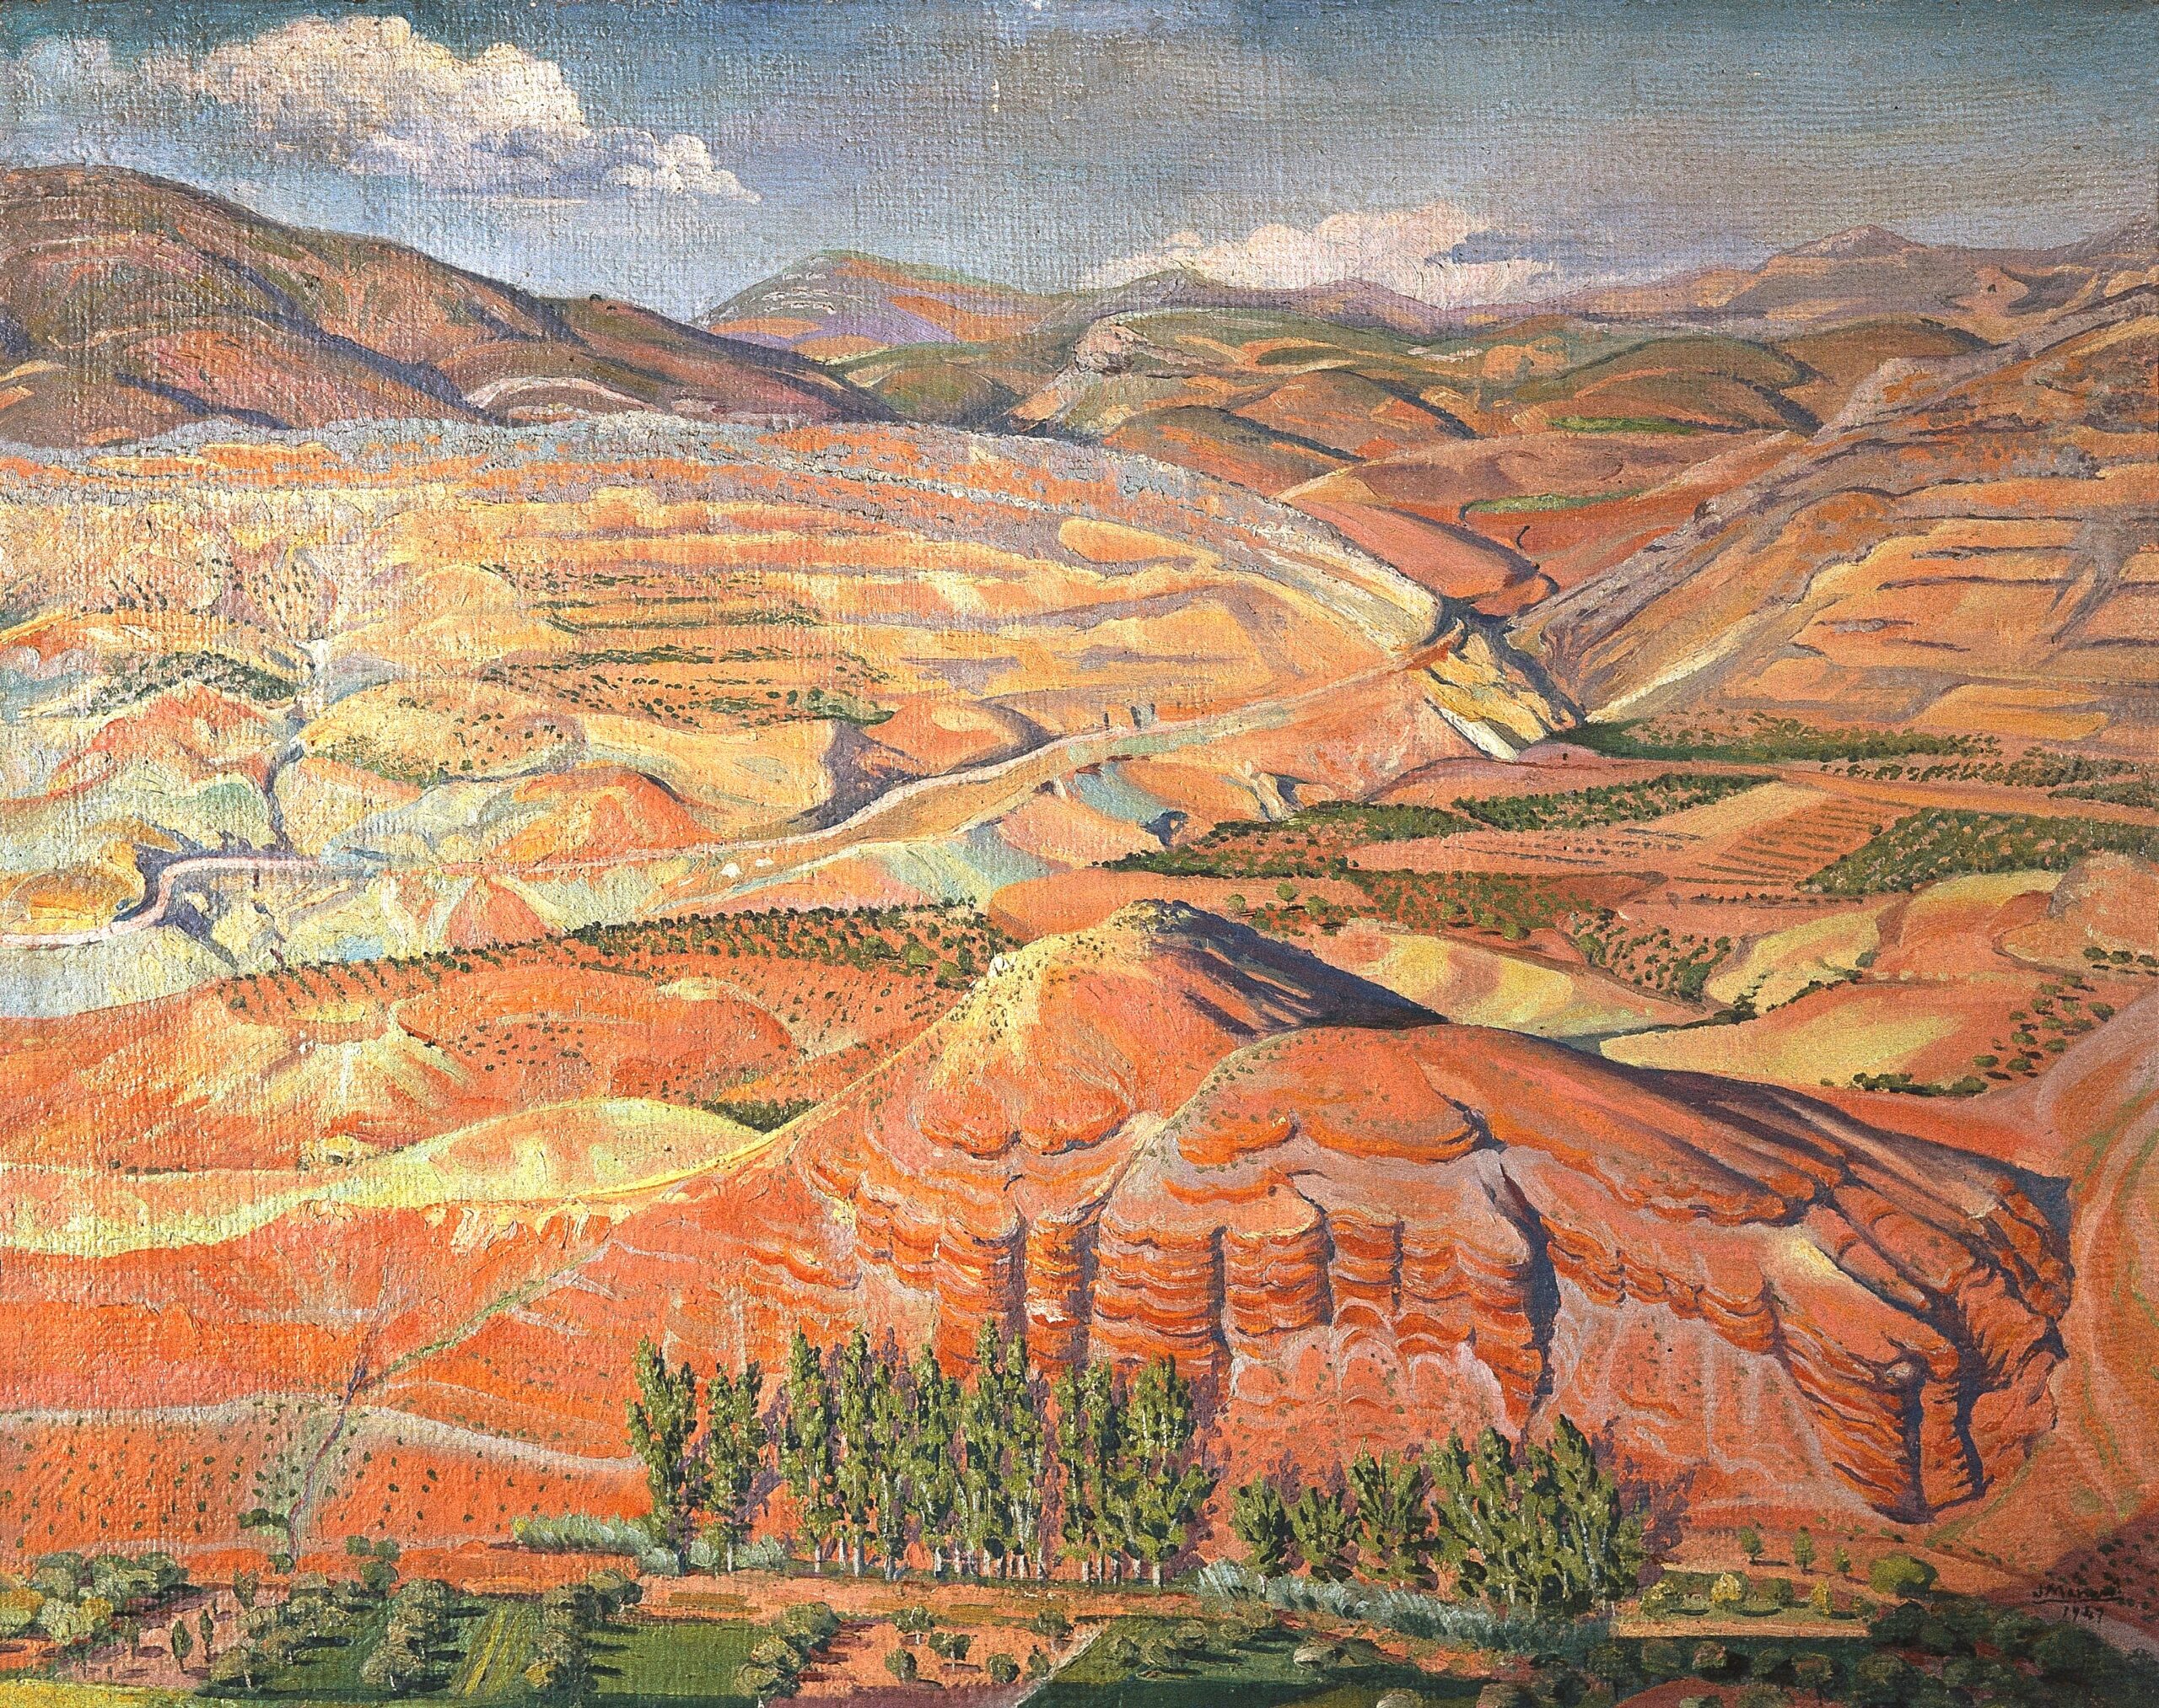 Pintura de José Manaut titulada Tierras rojas, 1947. Óleo sobre lienzo.